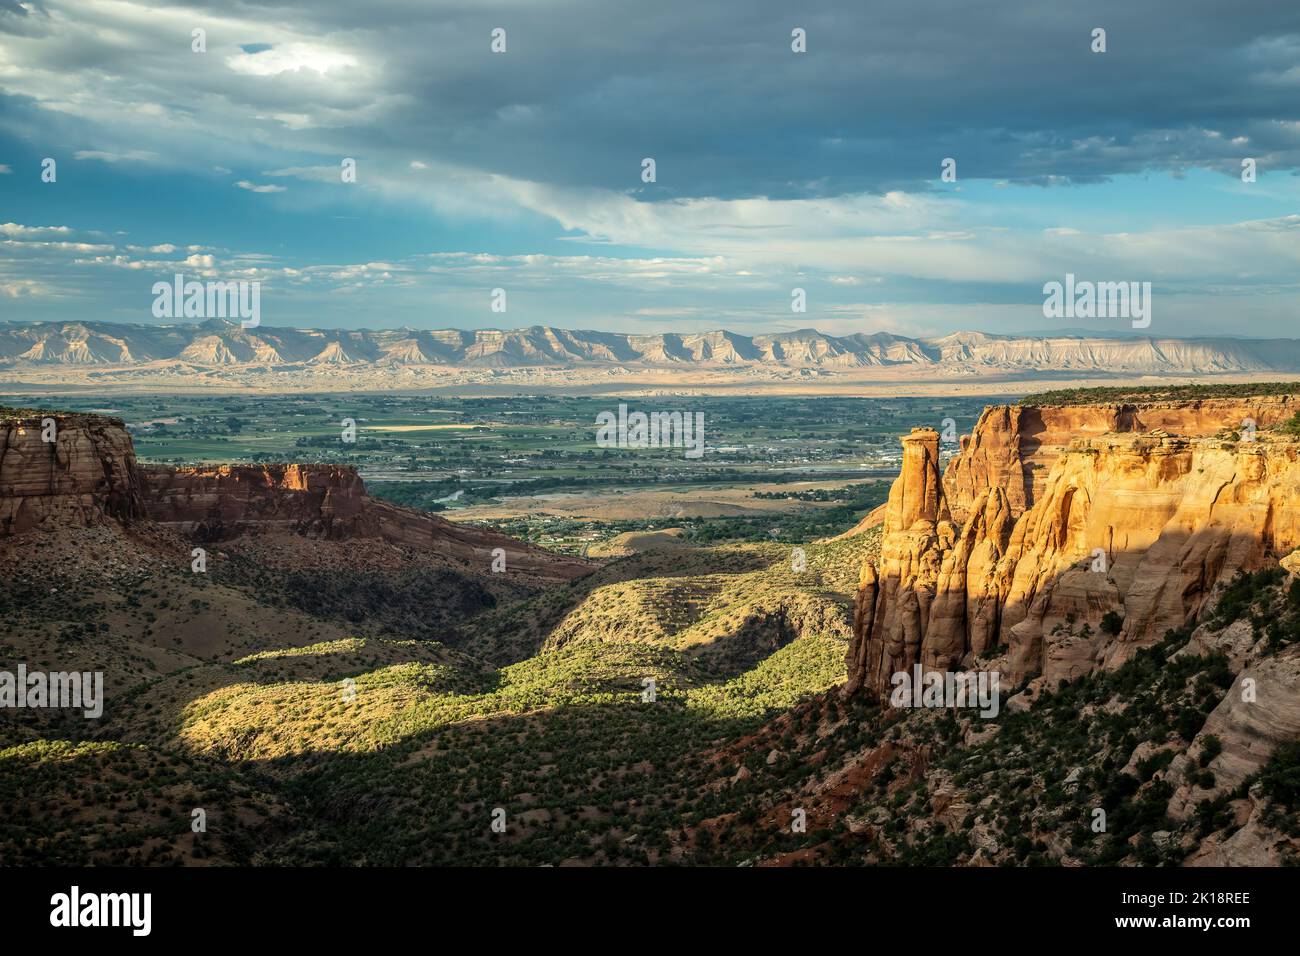 Monumenti di pietra arenaria e formazioni, Colorado National Monument, Grand Junction, Colorado, STATI UNITI D'AMERICA Foto Stock